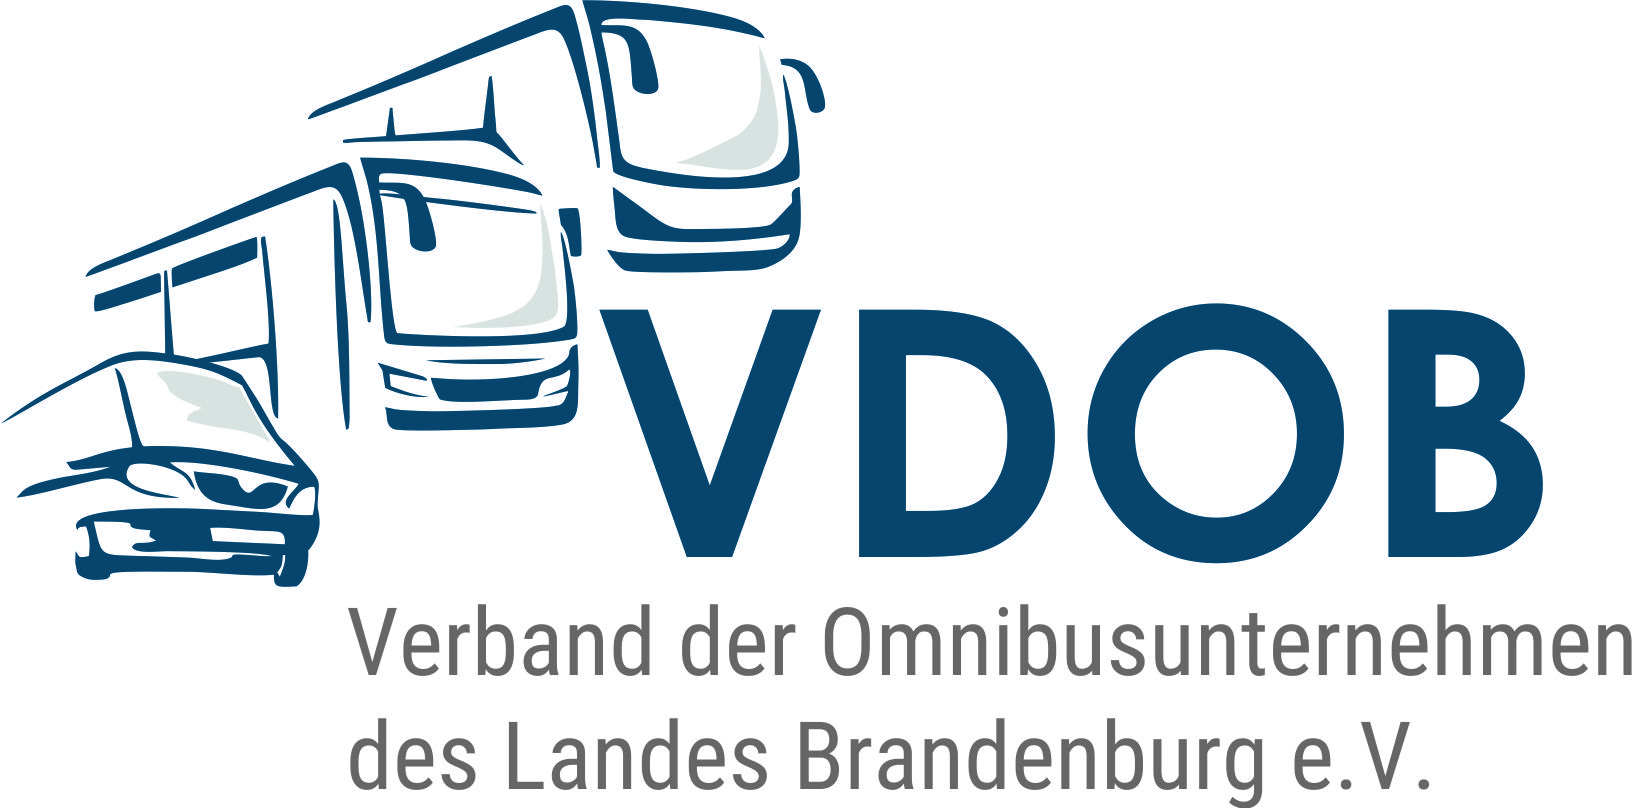 Verband der Omnibusunternehmer des Landes Brandenburg (VDOB) e.V.